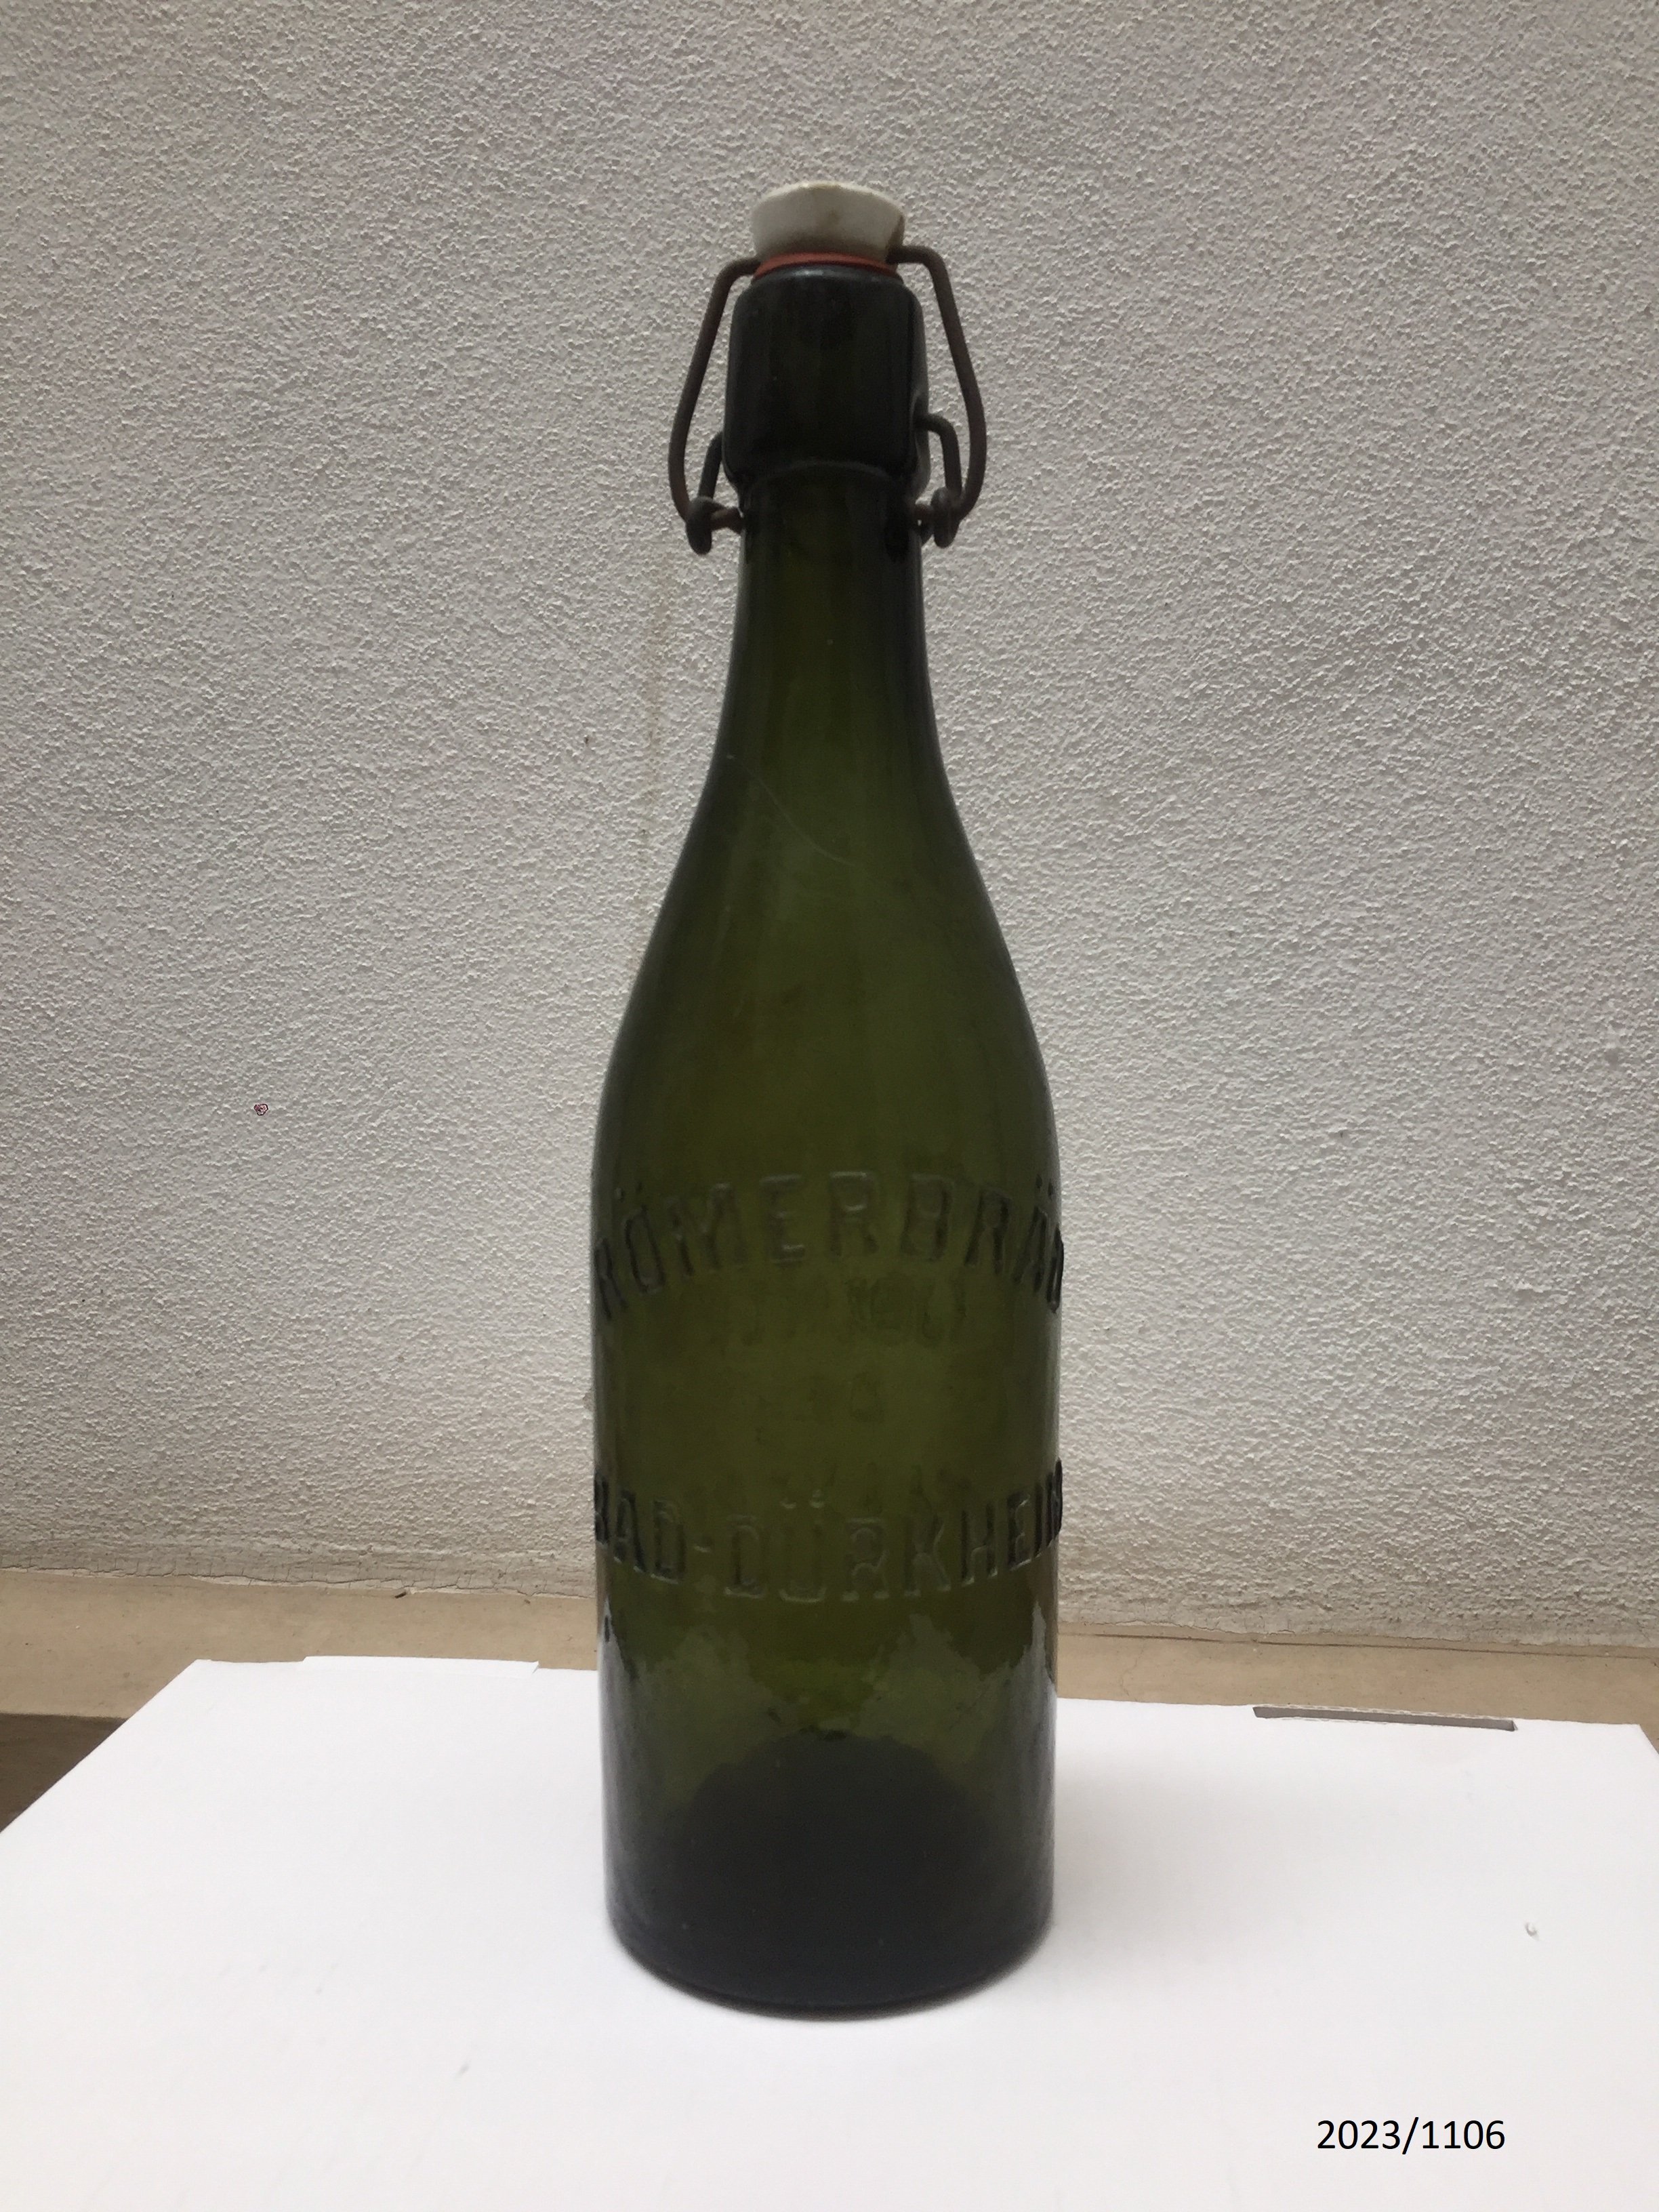 Bierflasche "Römerbräu Bad Dürkheim" 1 Liter (Stadtmuseum Bad Dürkheim im Kulturzentrum Haus Catoir CC BY-NC-SA)